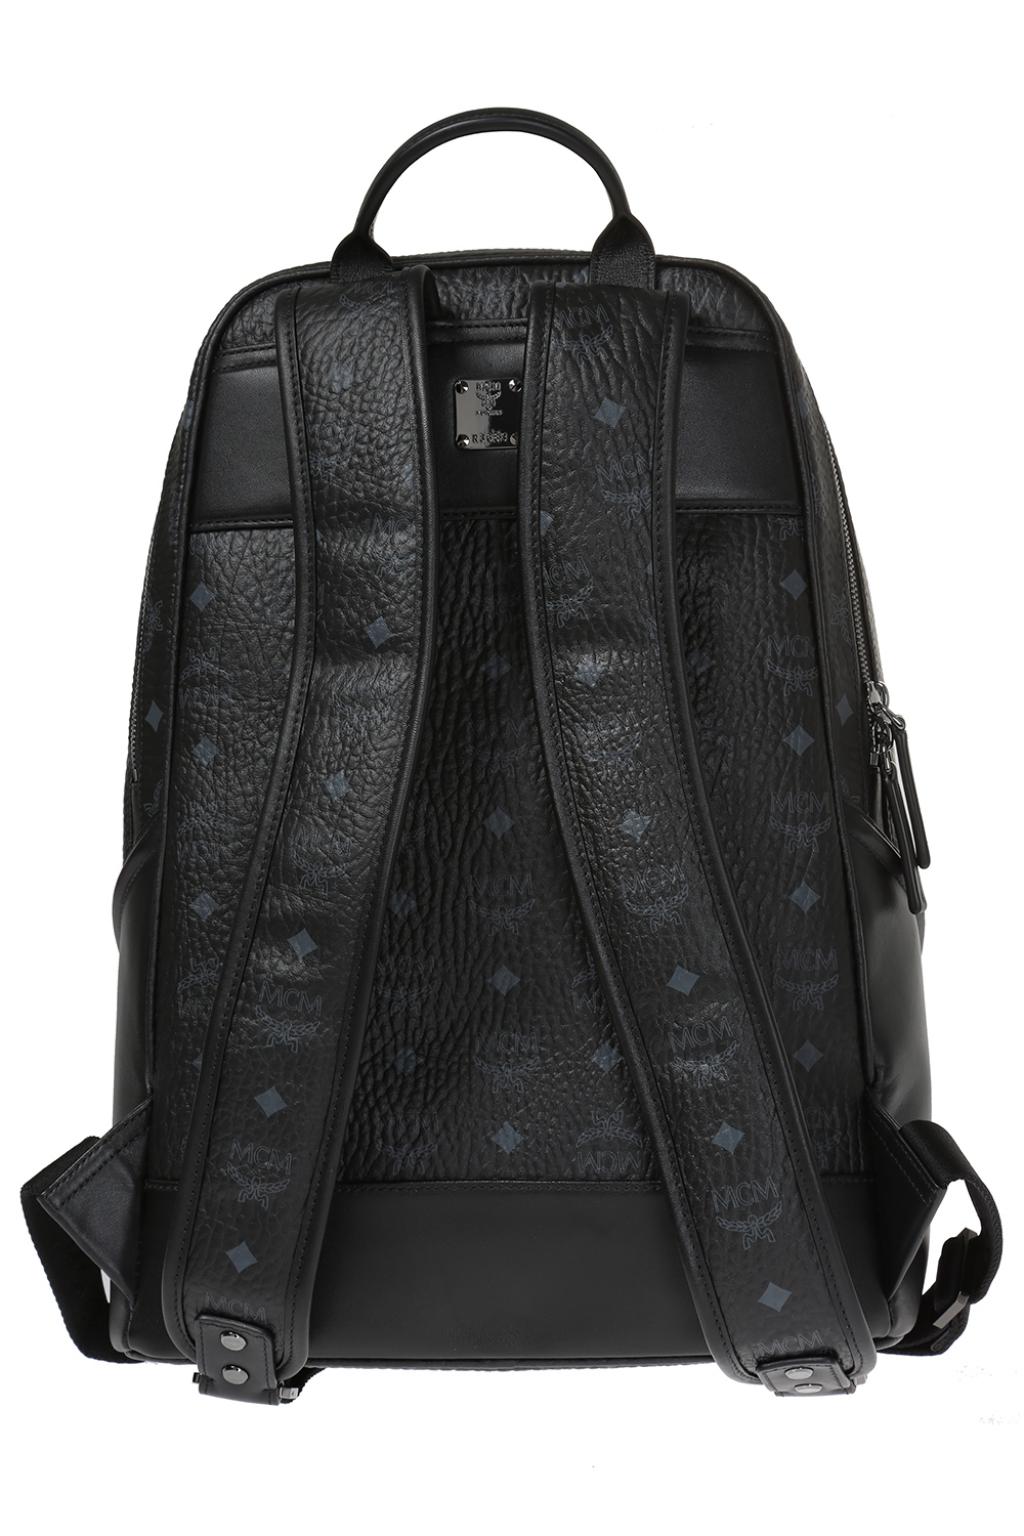 MCM, Bags, Black Mcm Backpack Medium 55